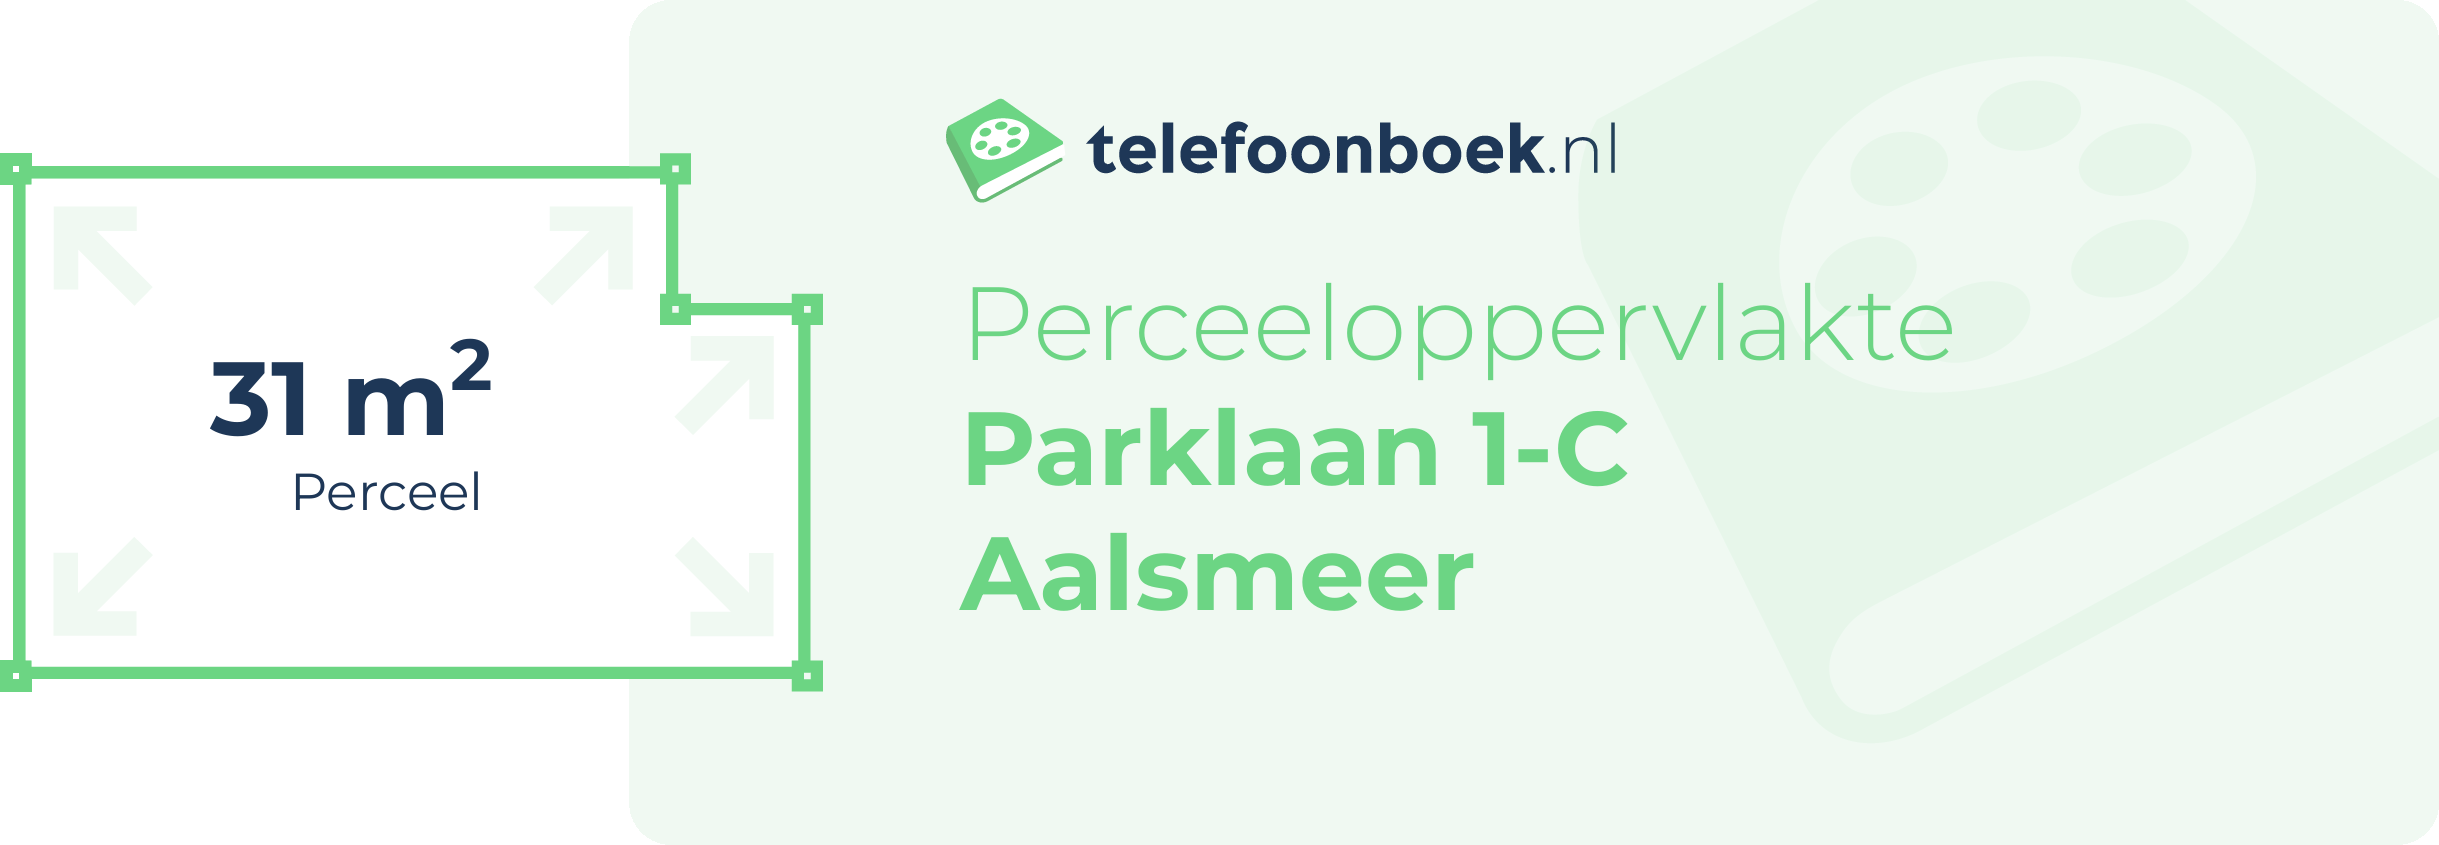 Perceeloppervlakte Parklaan 1-C Aalsmeer